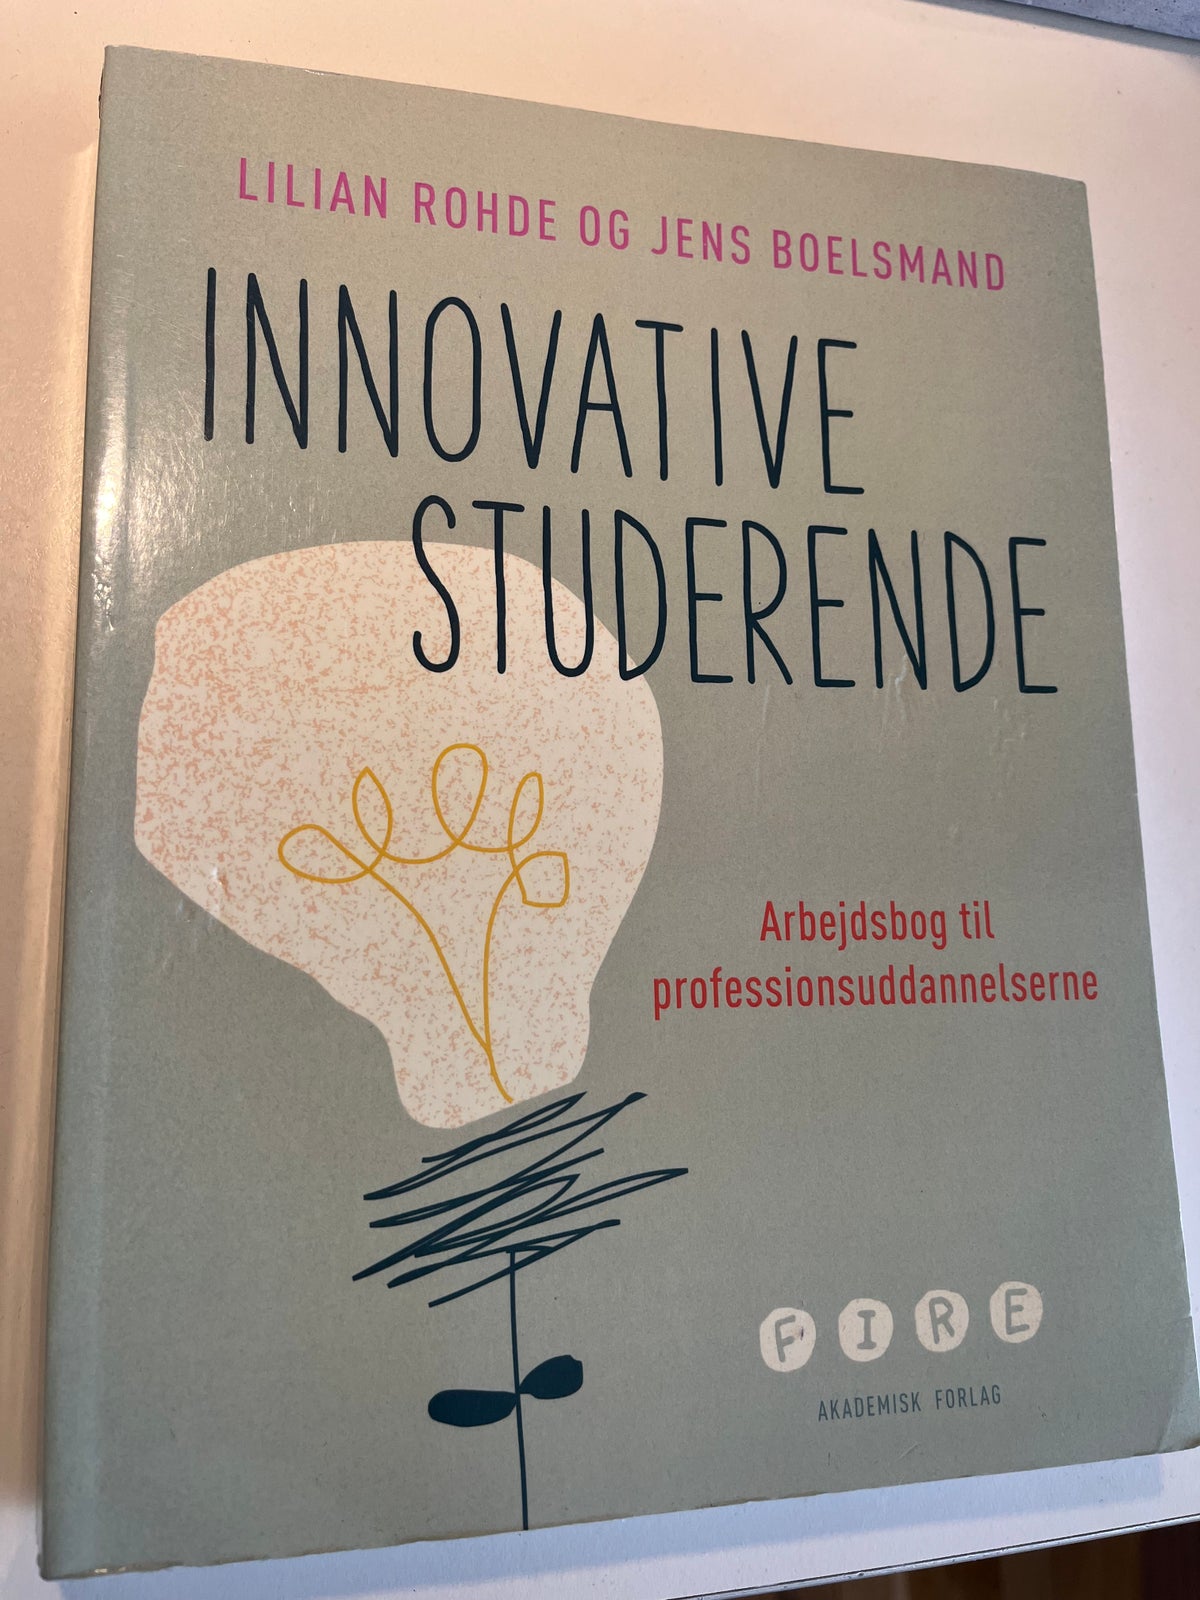 Innovative studerende, L. Rohde & J. Boelsmand, år 2021